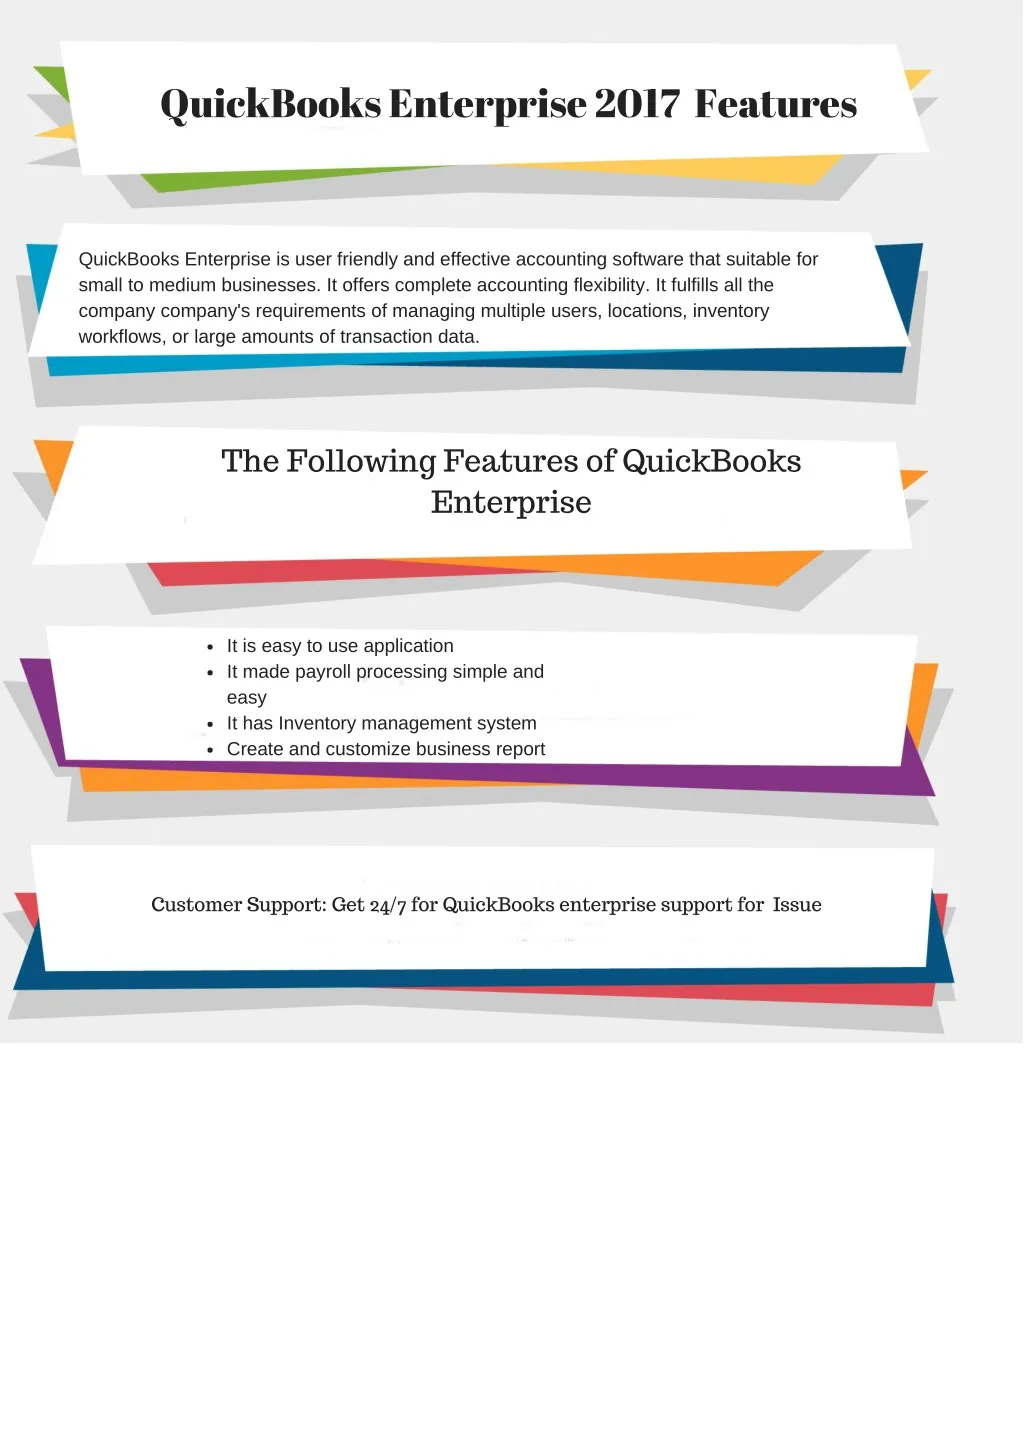 quickbooks enterprise 2017 features